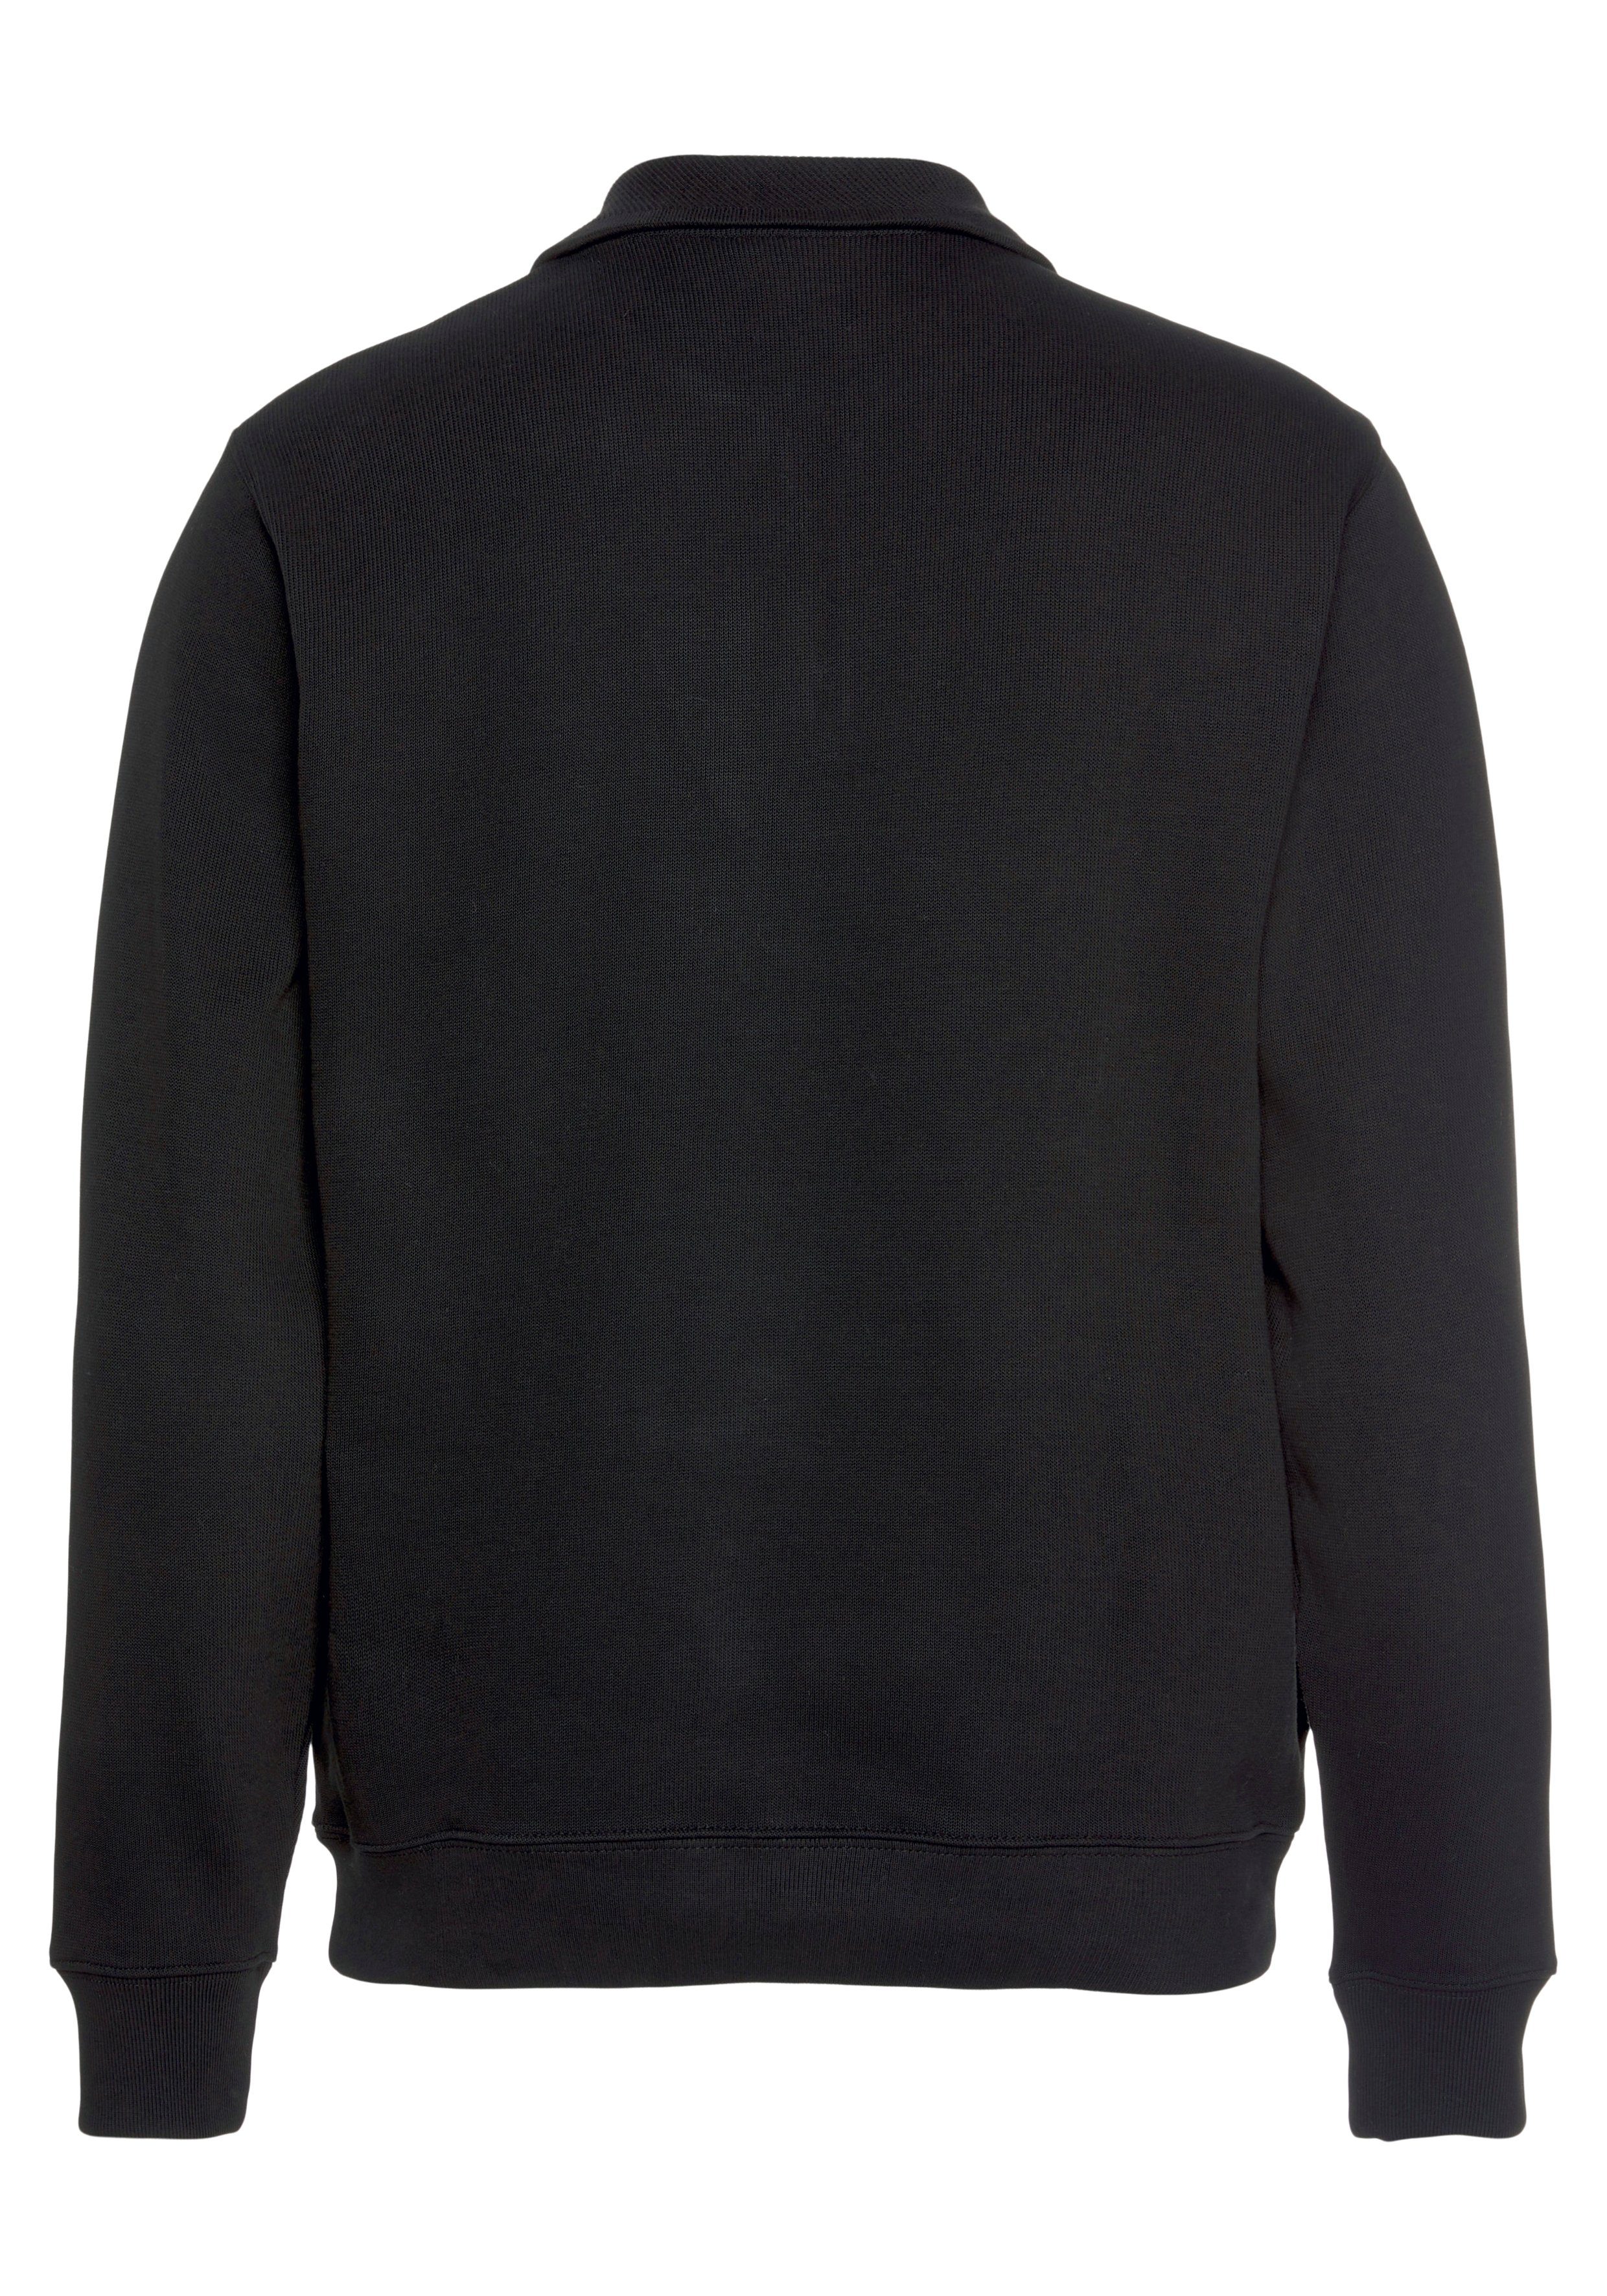 Lacoste Sweatshirt mit Sweattroyer Stehkragen black